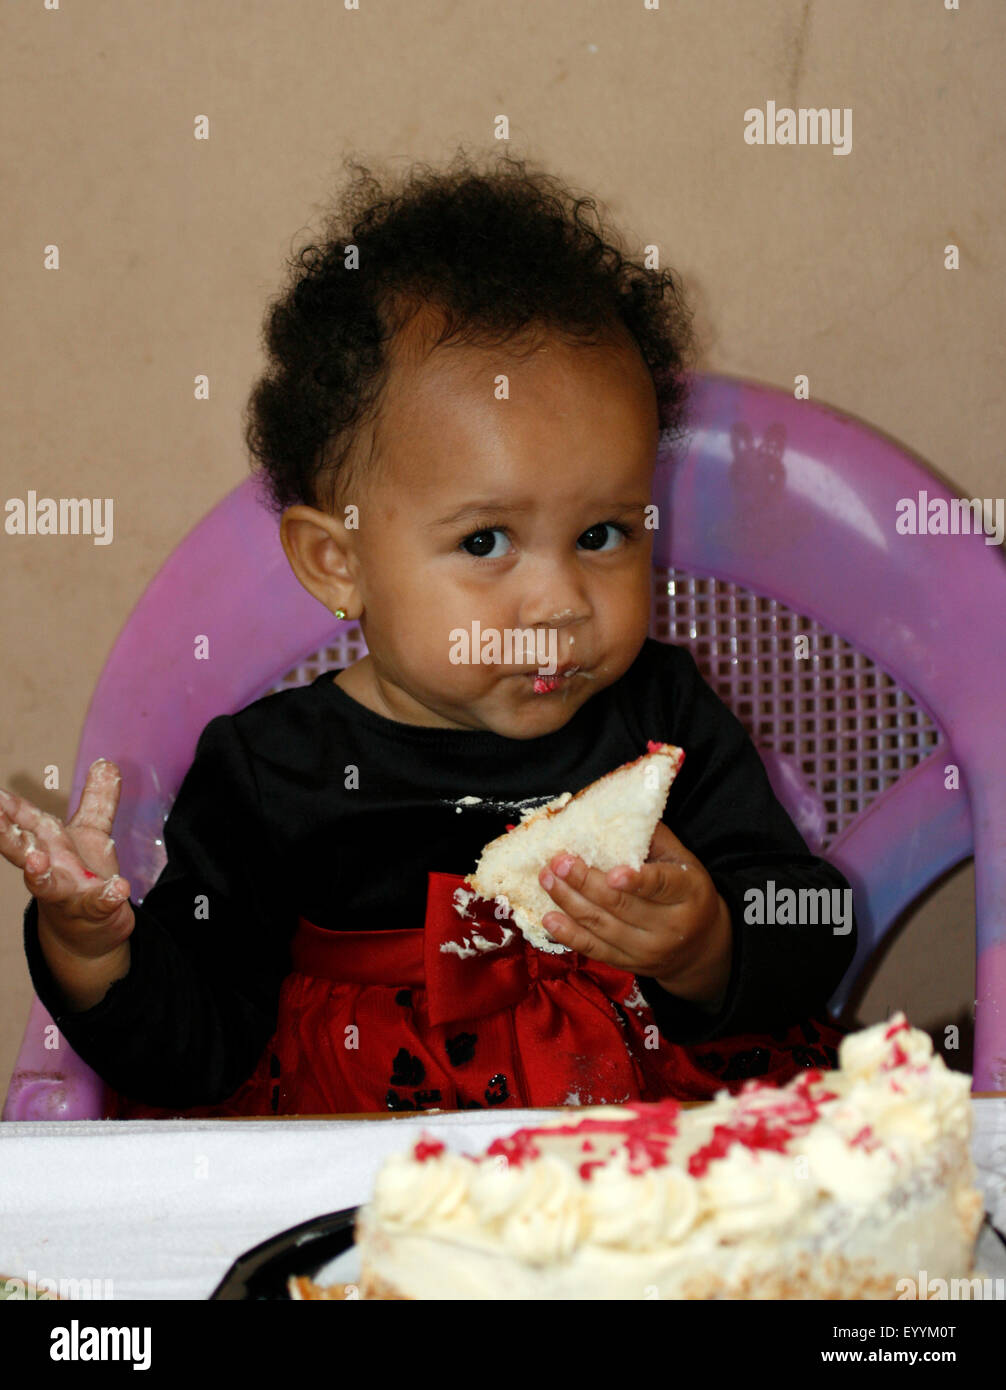 Ein Baby, das ihr Kuchen essen, als sie ihren ersten Geburtstag feiert Stockfoto